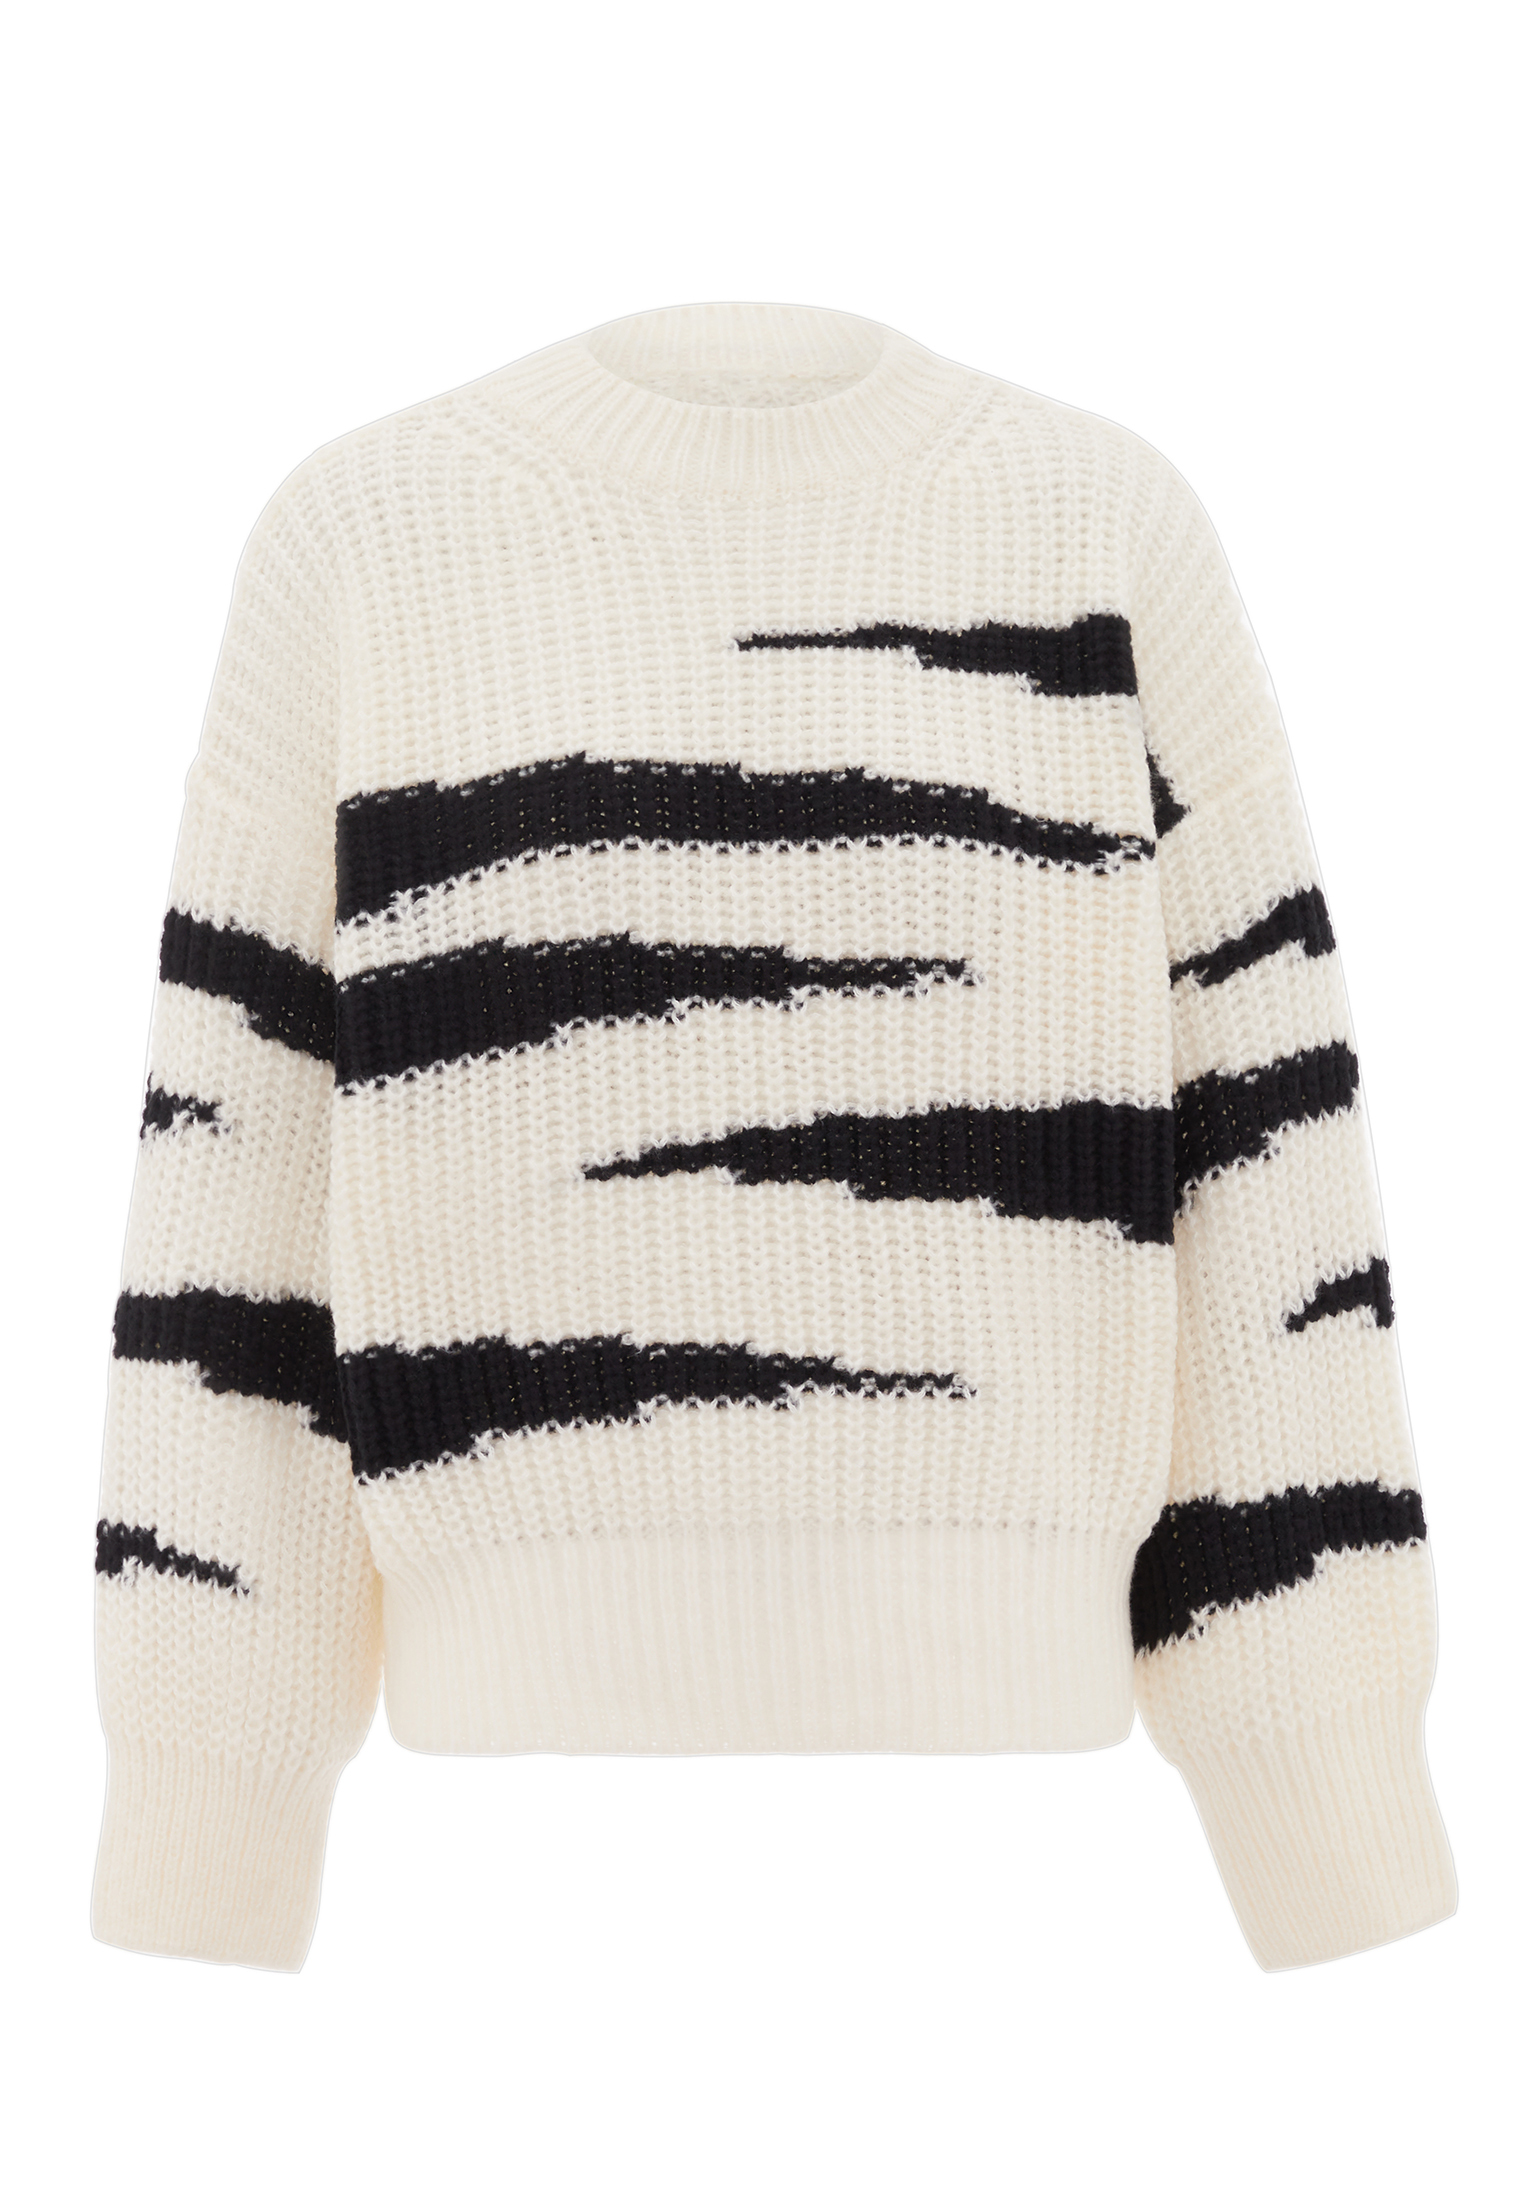 Свитер FENIA Sweater, белый черный свитер fenia sweater белый